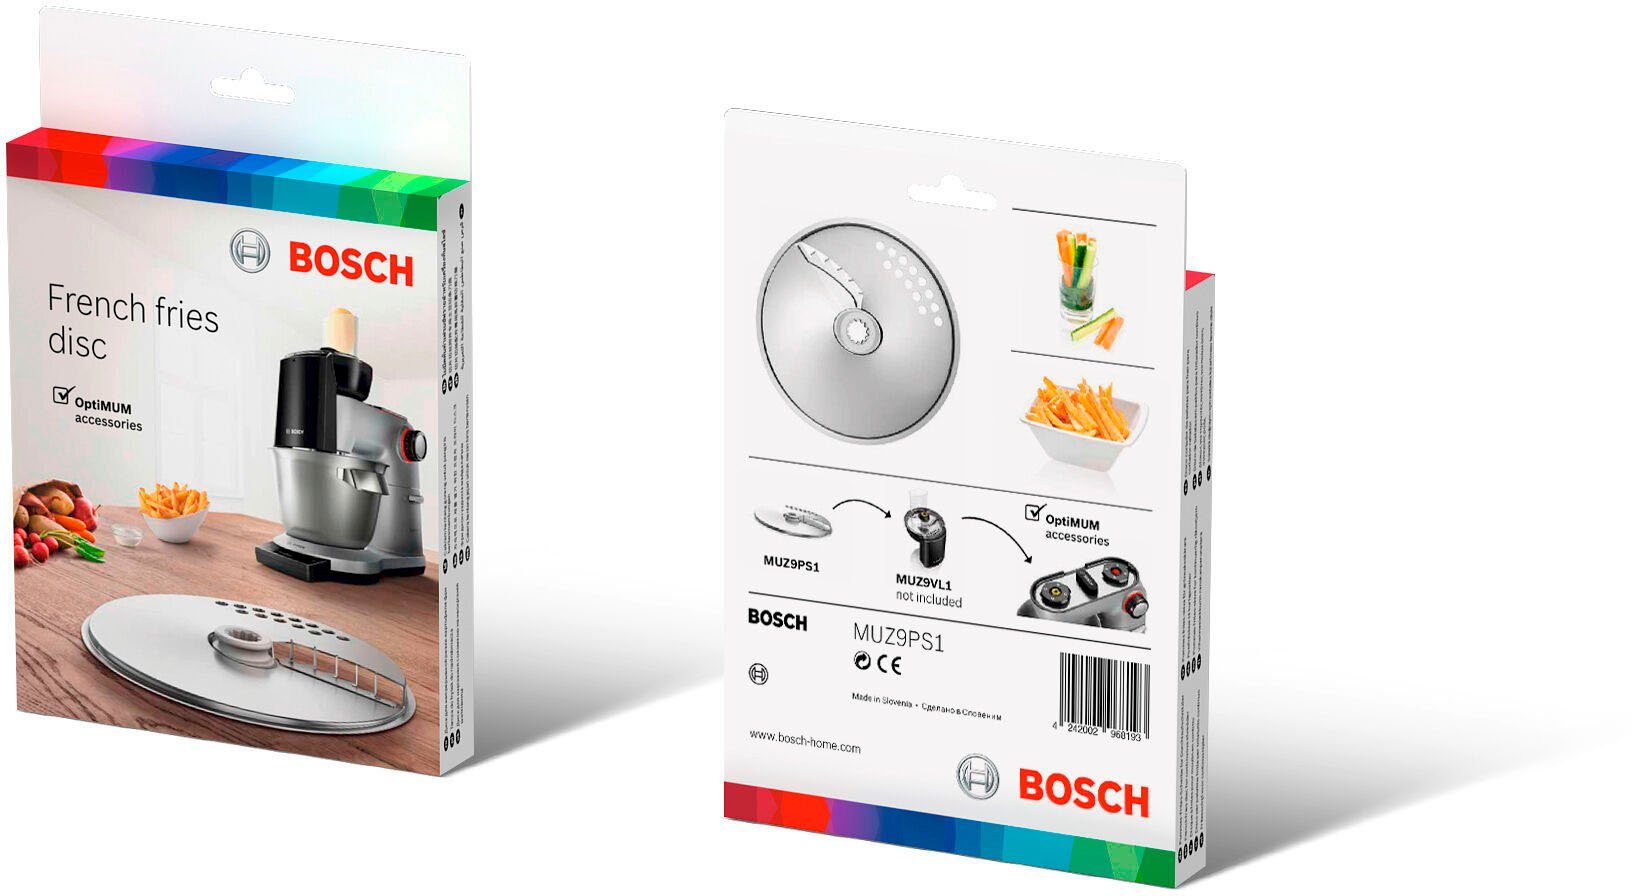 Home die Bosch (MUM9) Garden für und Zubehör Durchlaufschnitzler, schnelle von BOSCH für frites. einfache OptiMUM Pommes-Frites-Scheibe, MUZ9PS1 Zubereitung & Pommes Schneideaufsatz